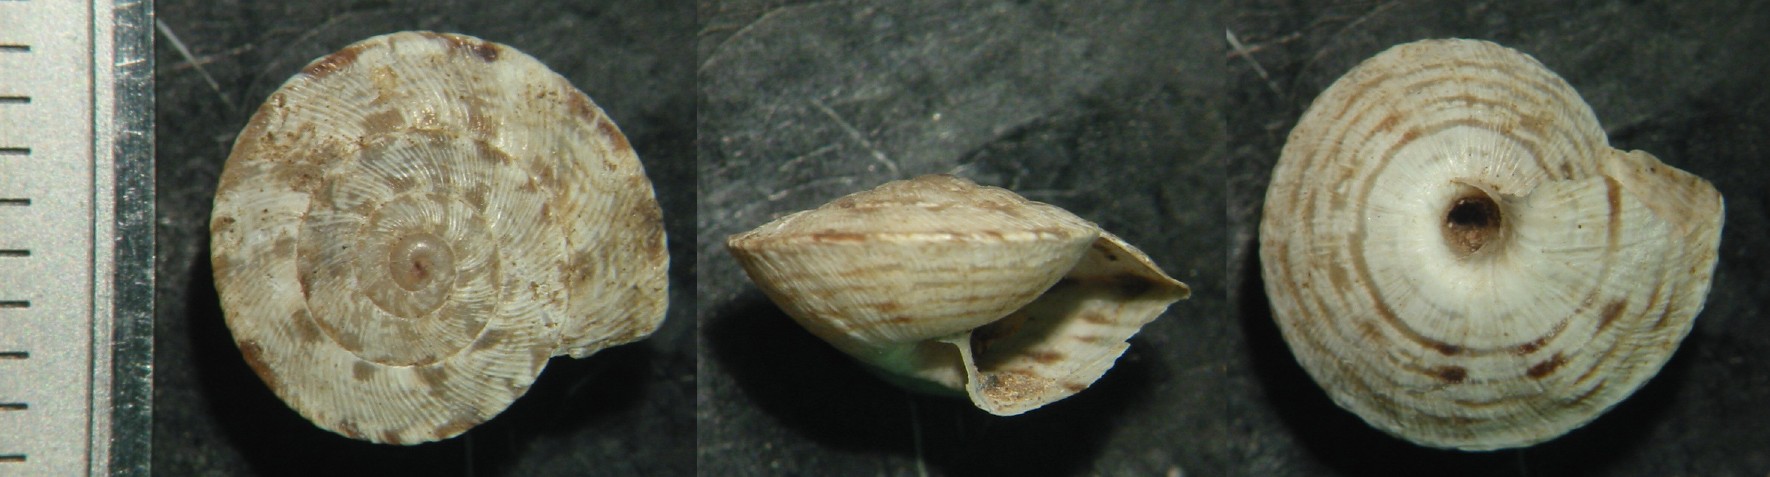 Cernuella (Xeroamanda) usticensis (Calcara, 1842)